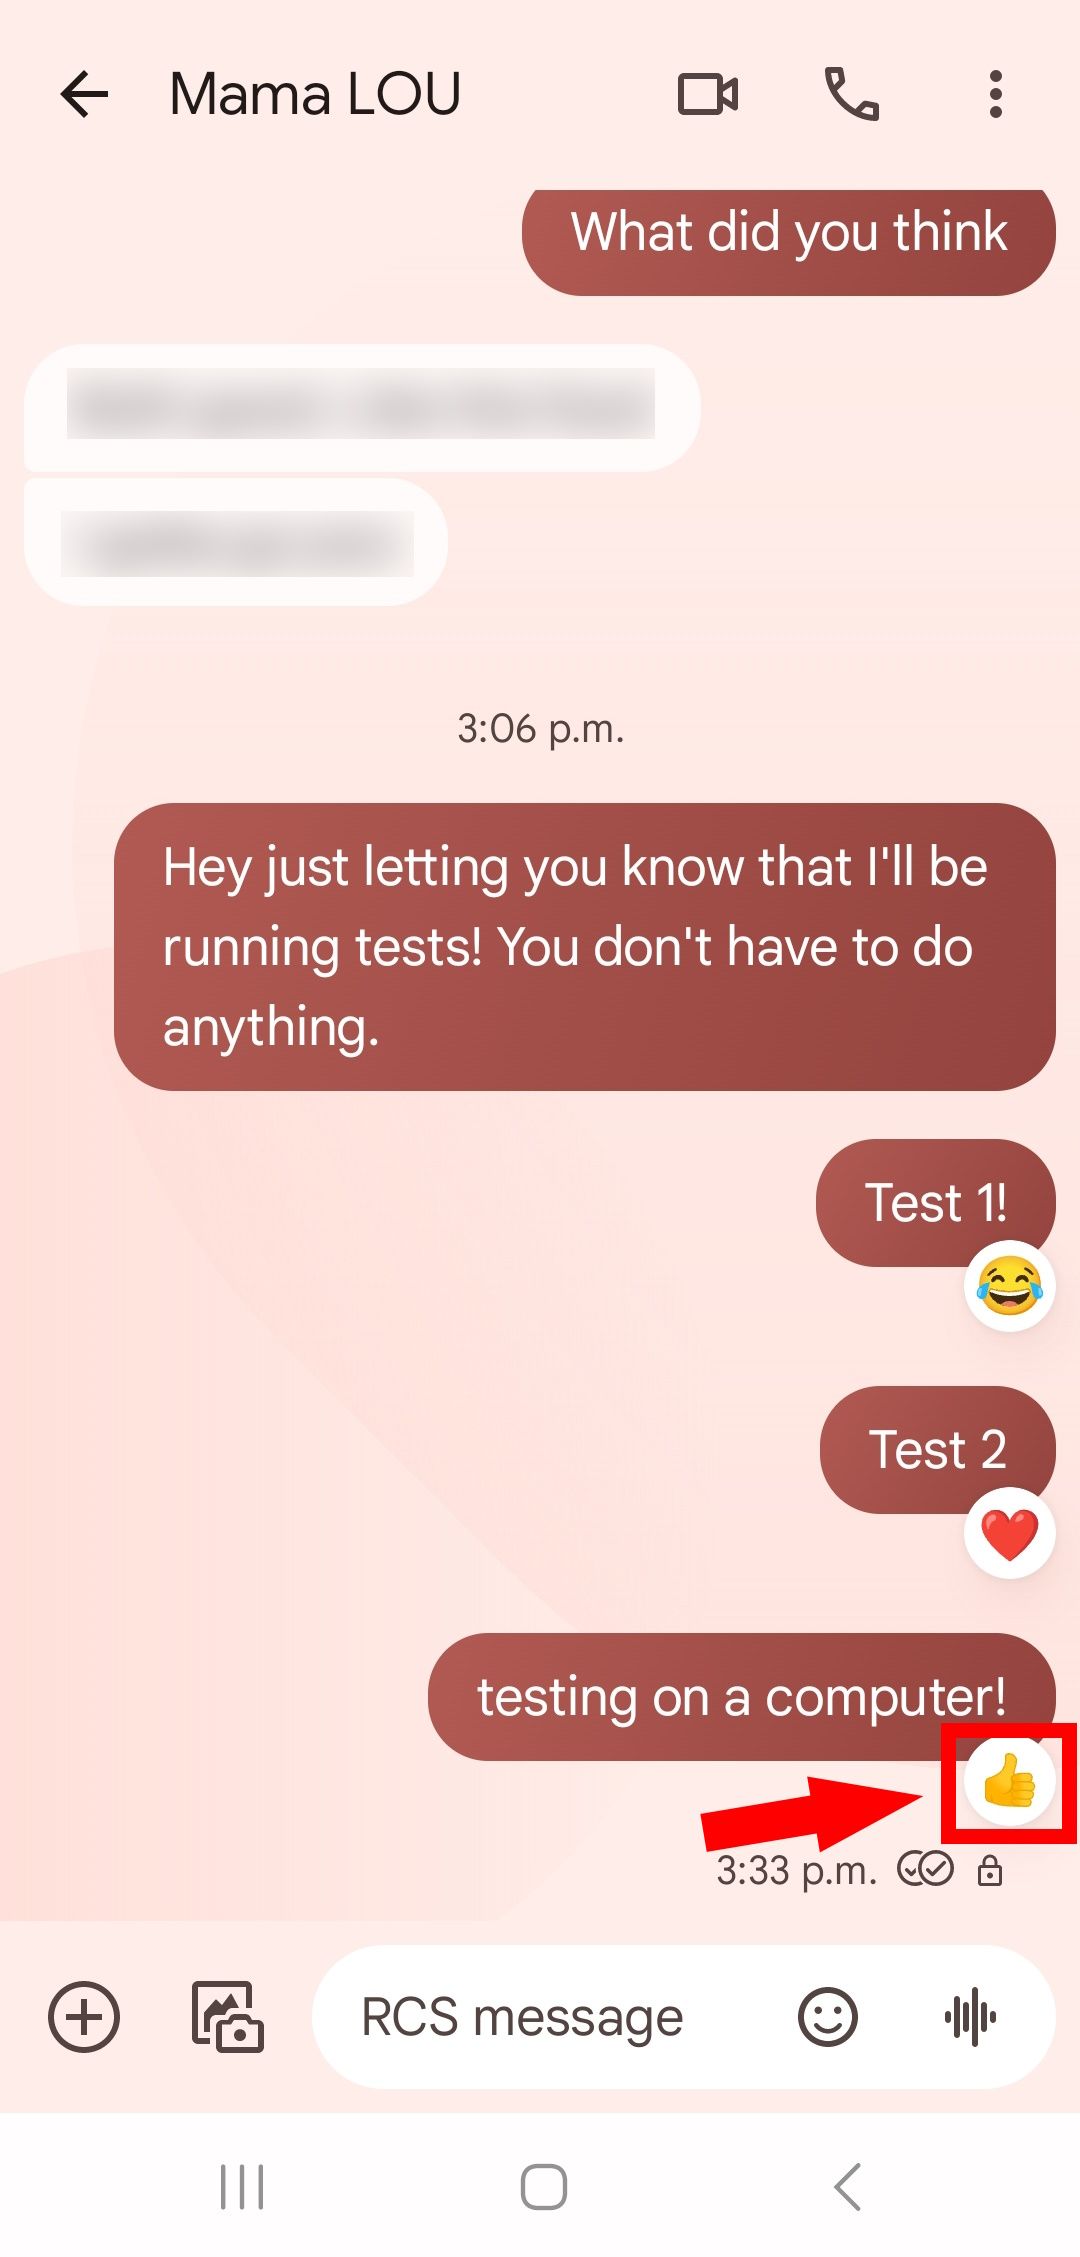 seta sólida vermelha apontando para emoji de reação positiva em uma mensagem de texto no aplicativo de mensagens do Google